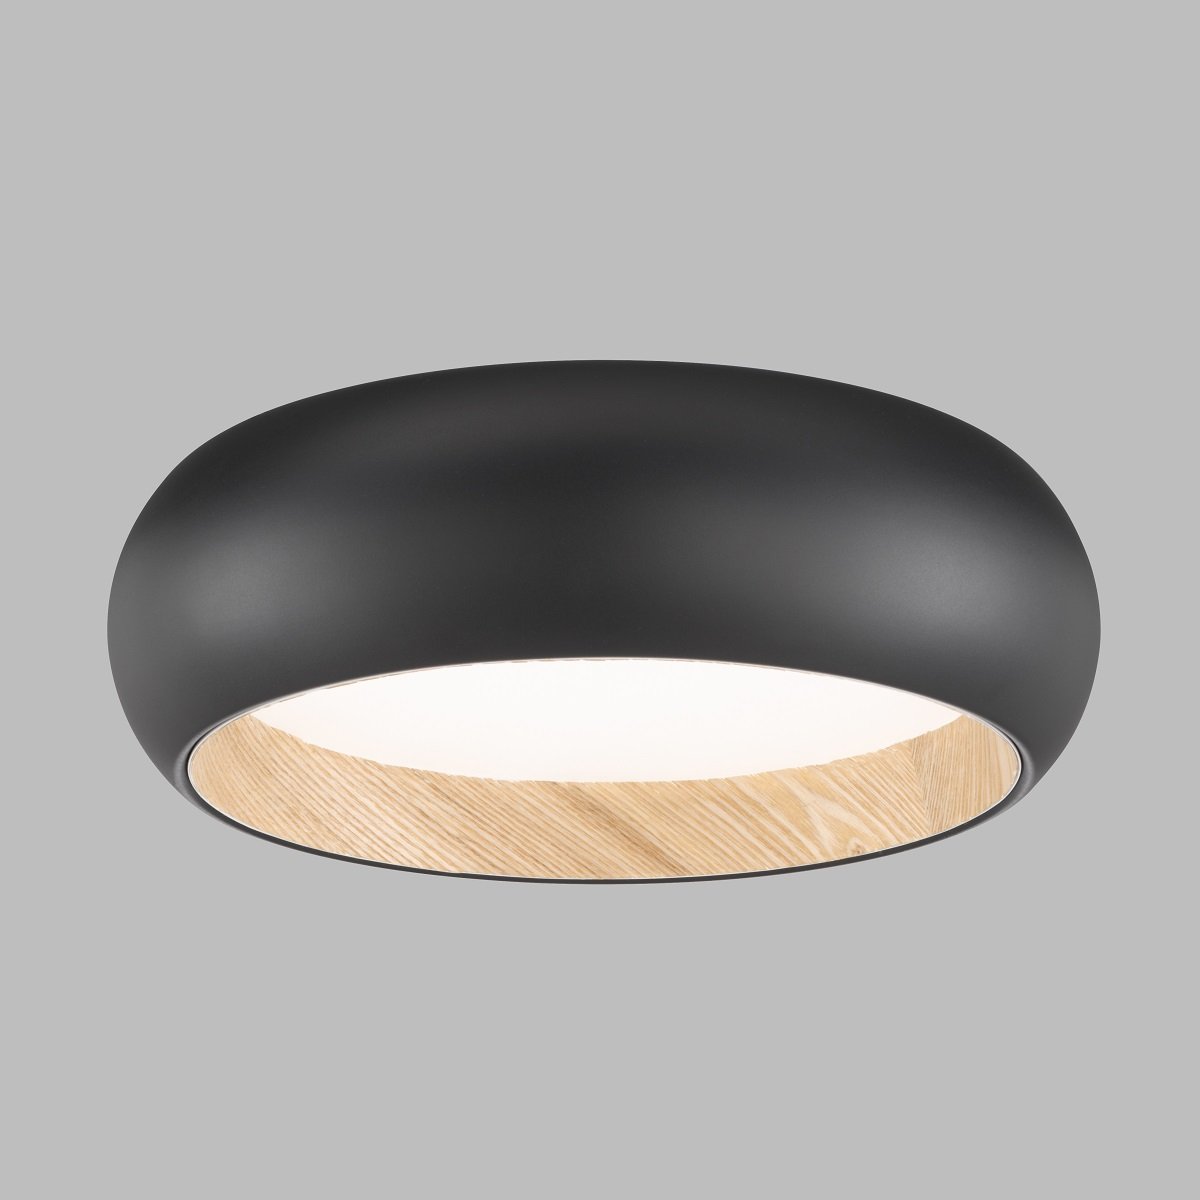 SCHÖNER WOHNEN-Kollektion LED Deckenleuchte Wood schwarz eiche natur 821338  --> Leuchten & Lampen online kaufen im Shop | Deckenlampen